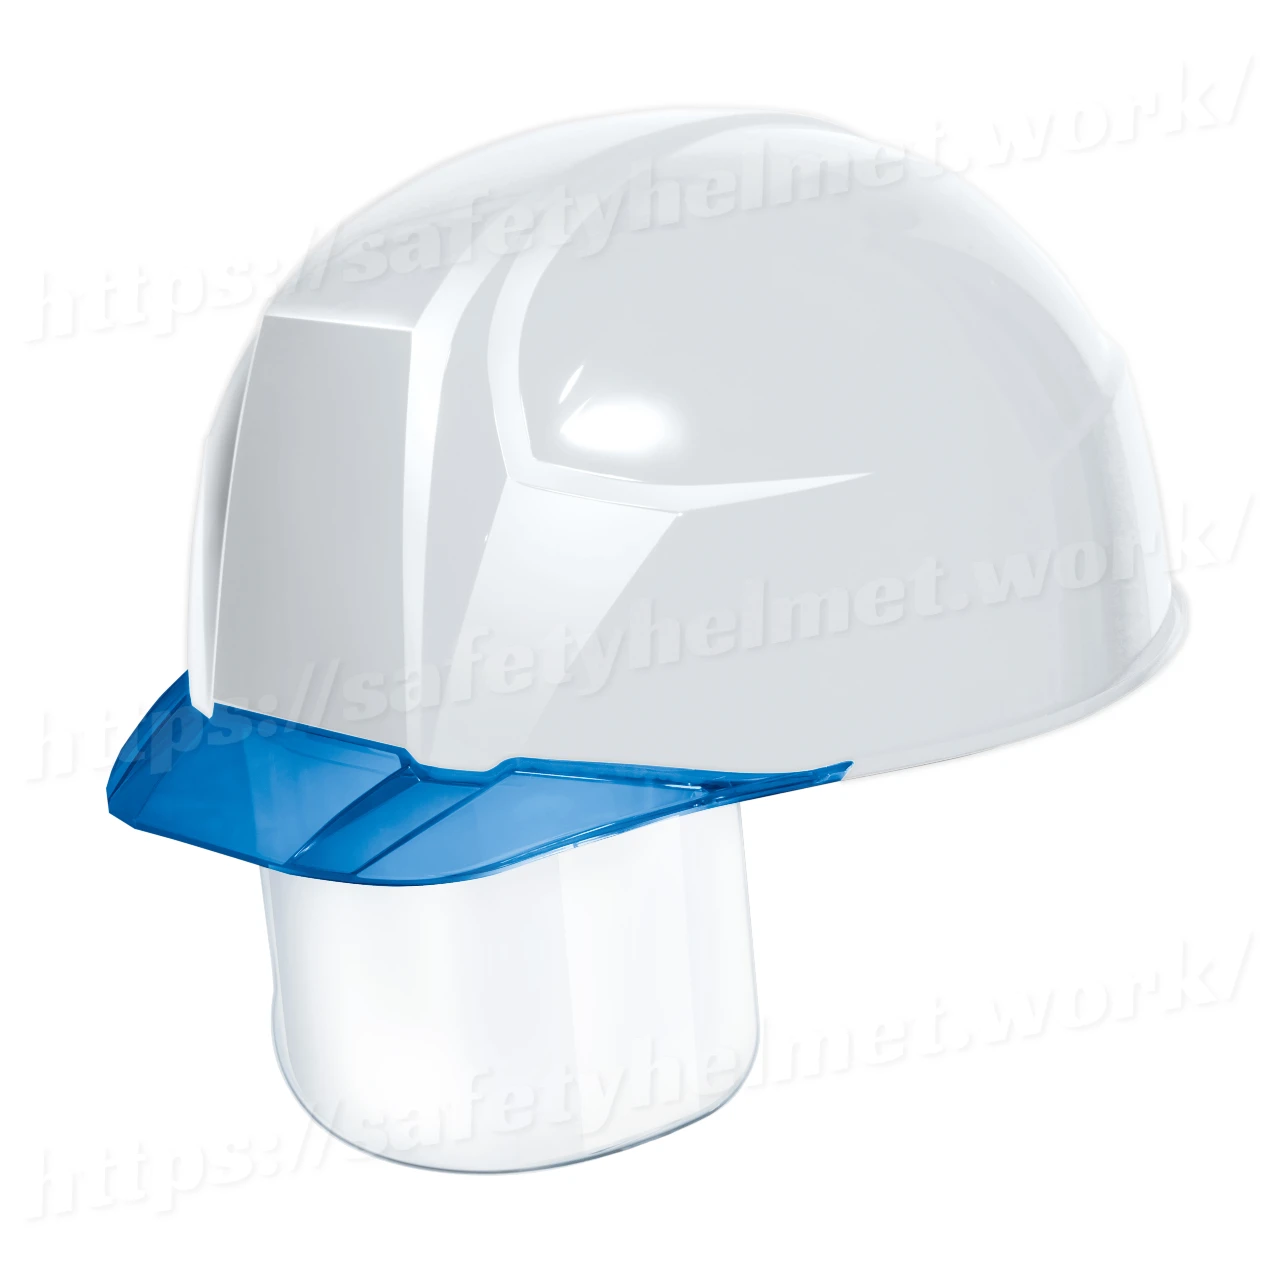 dic-helmet-lightest-shield-aa23cs-white-blue